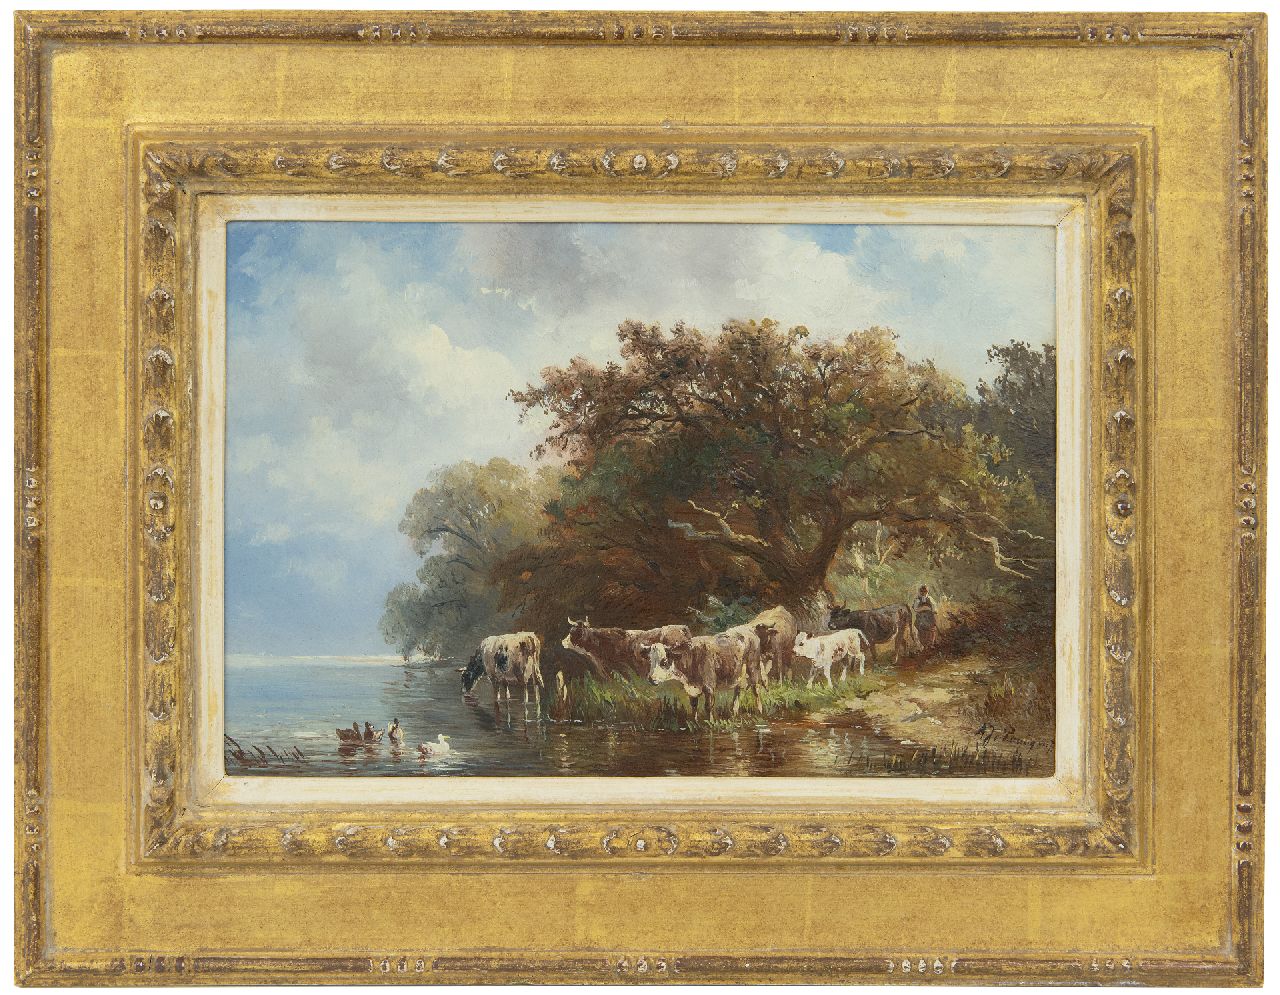 Prooijen A.J. van | Albert Jurardus van Prooijen | Schilderijen te koop aangeboden | Herderin met koeien langs de oever van een rivier, olieverf op paneel 19,7 x 29,1 cm, gesigneerd rechtsonder